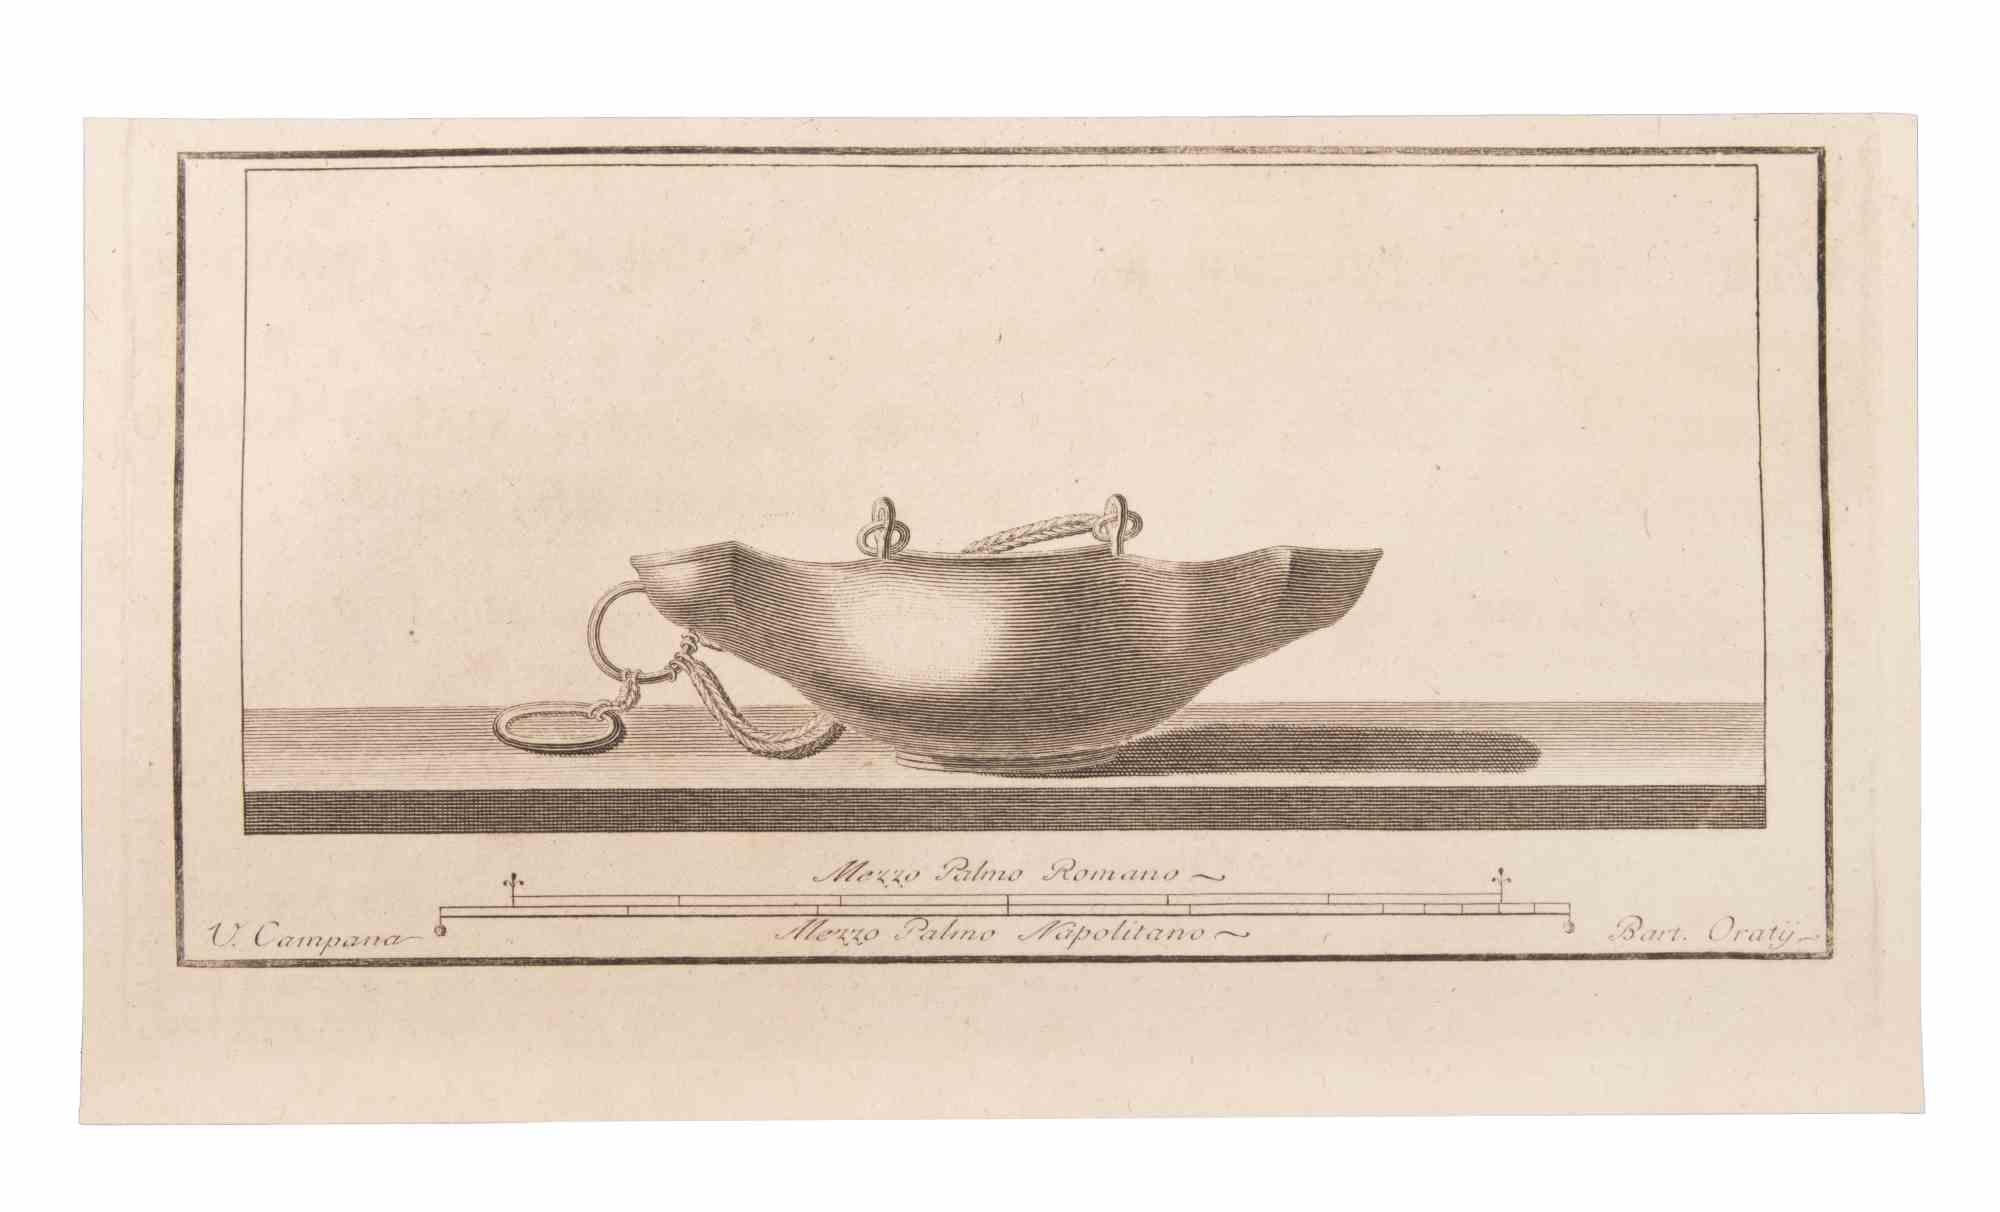 Öllampe zum Aufhängen ist eine Radierung von Vincenzo Campana (1730-1806).

Die Radierung gehört zu der Druckserie "Antiquities of Herculaneum Exposed" (Originaltitel: "Le Antichità di Ercolano Esposte"), einem achtbändigen Band mit Stichen von